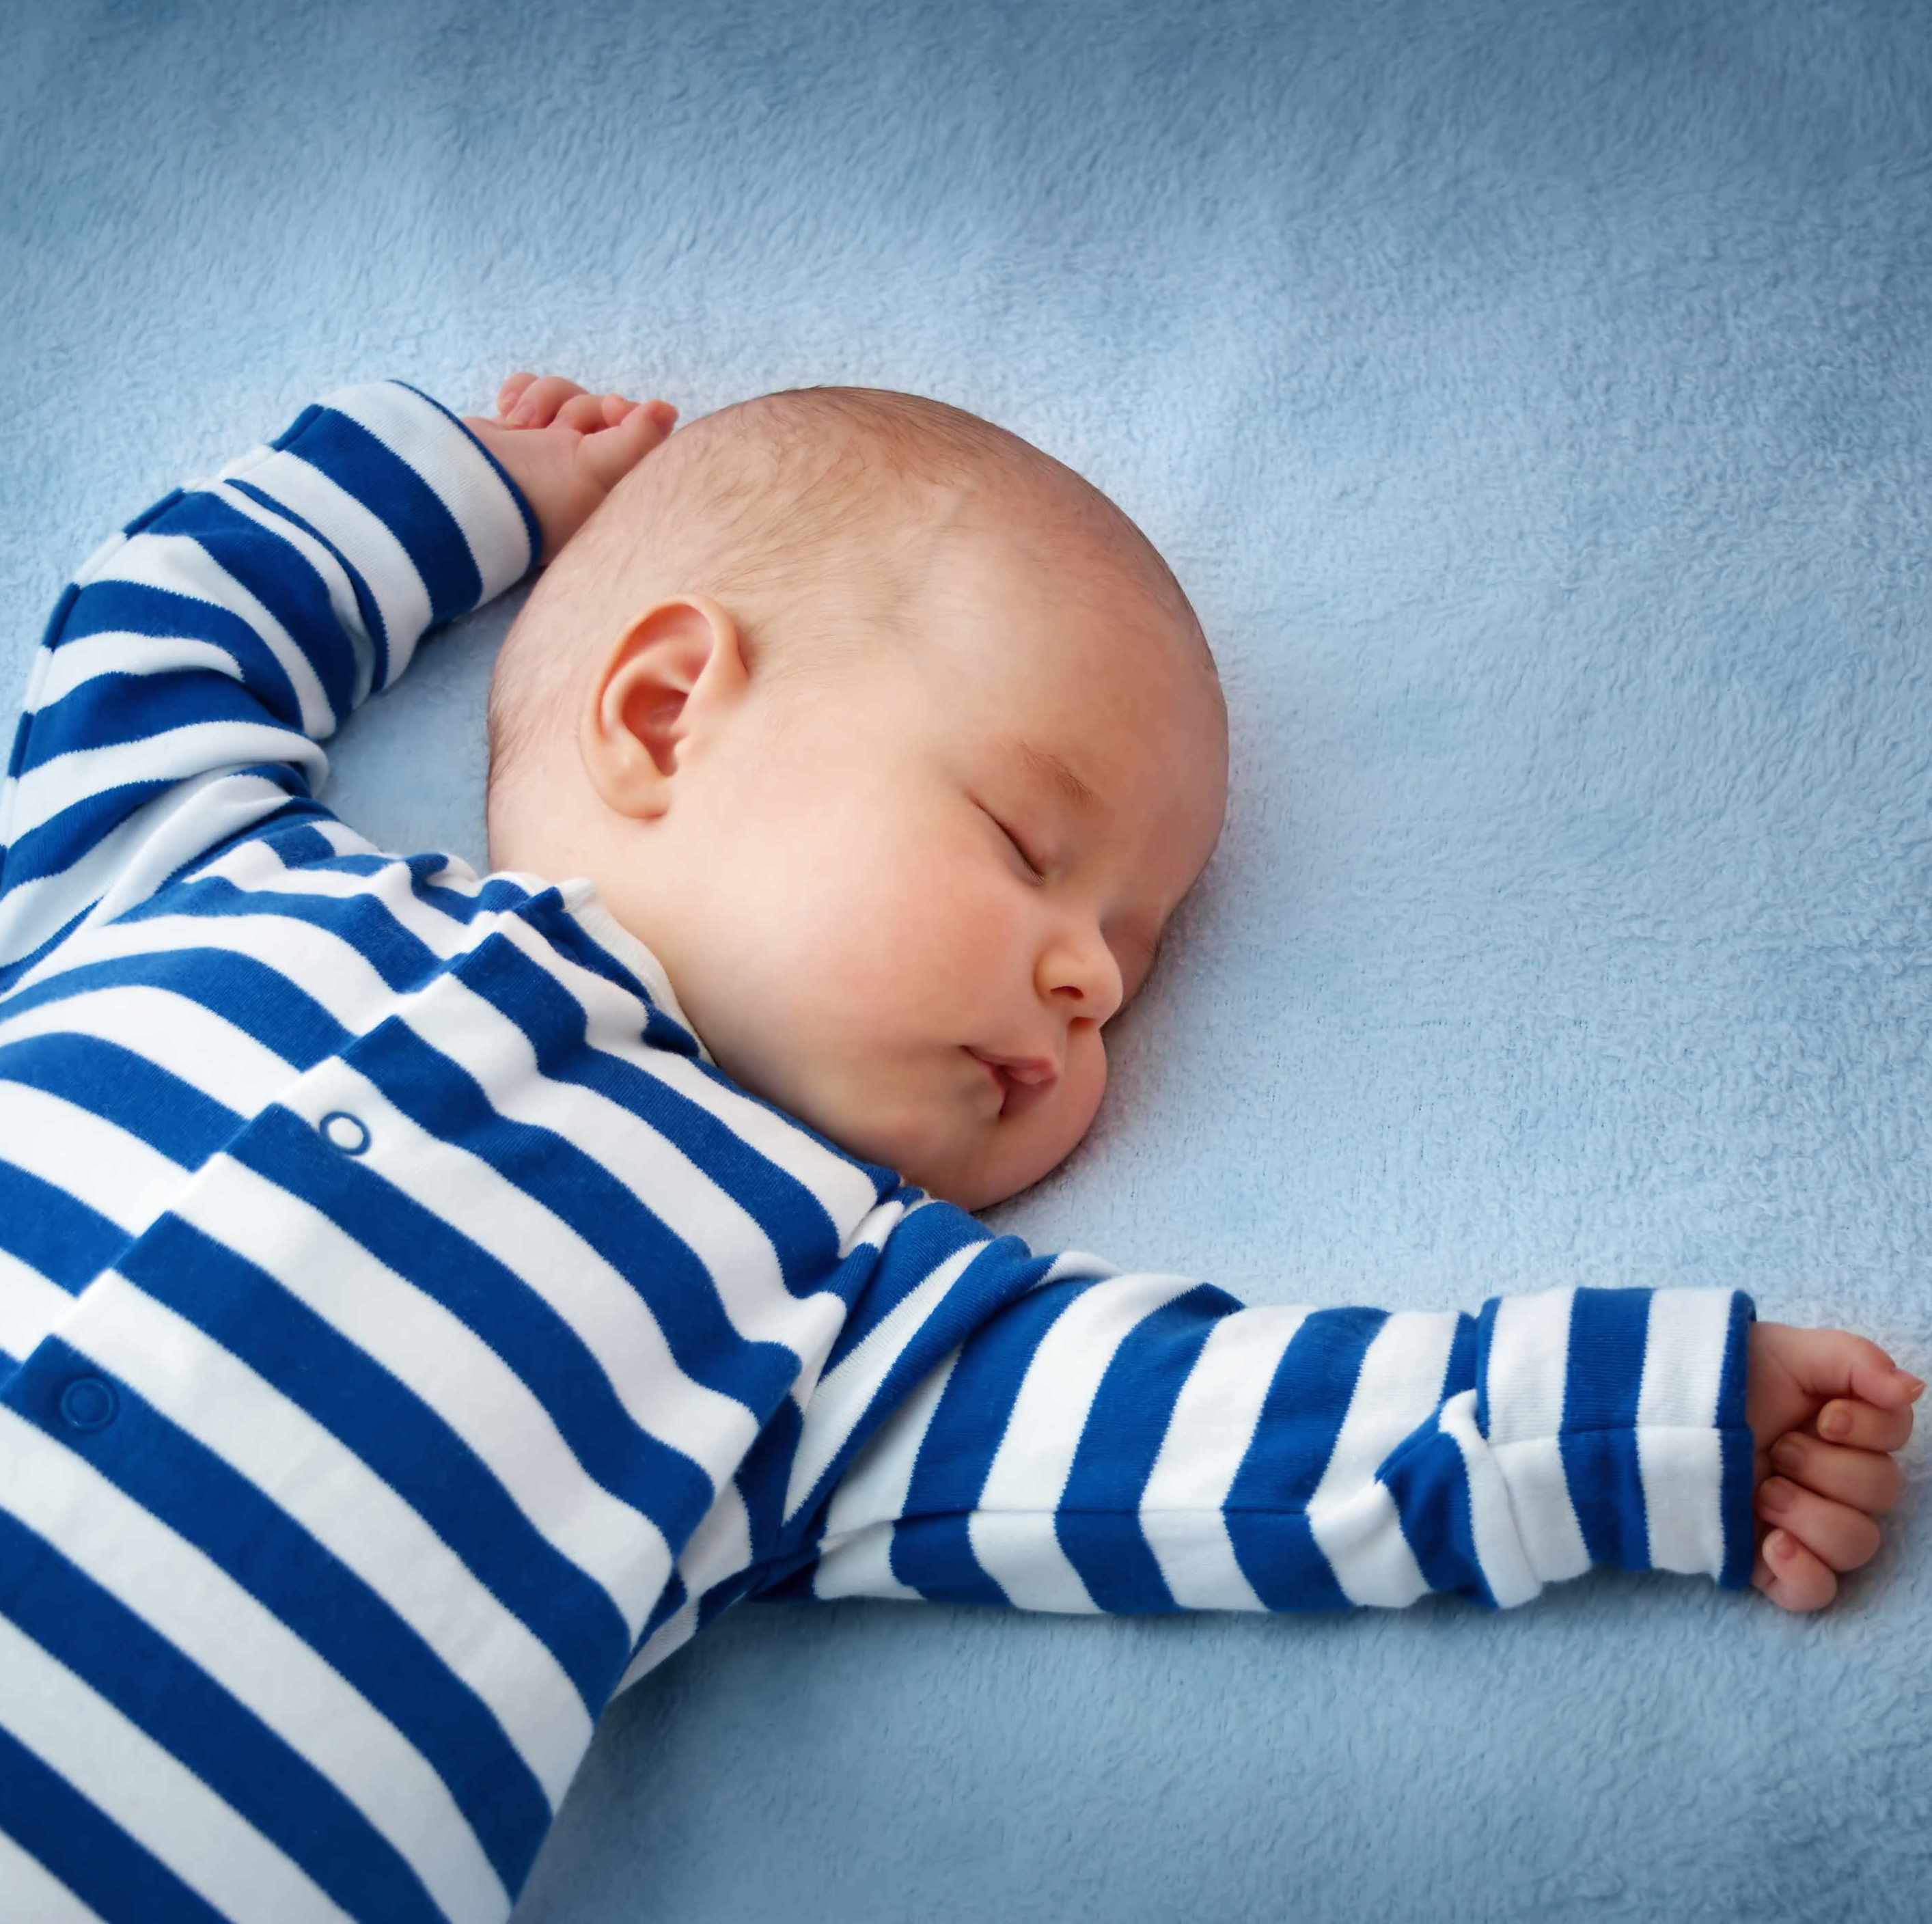 Làm gì khi bé bị khó ngủ?